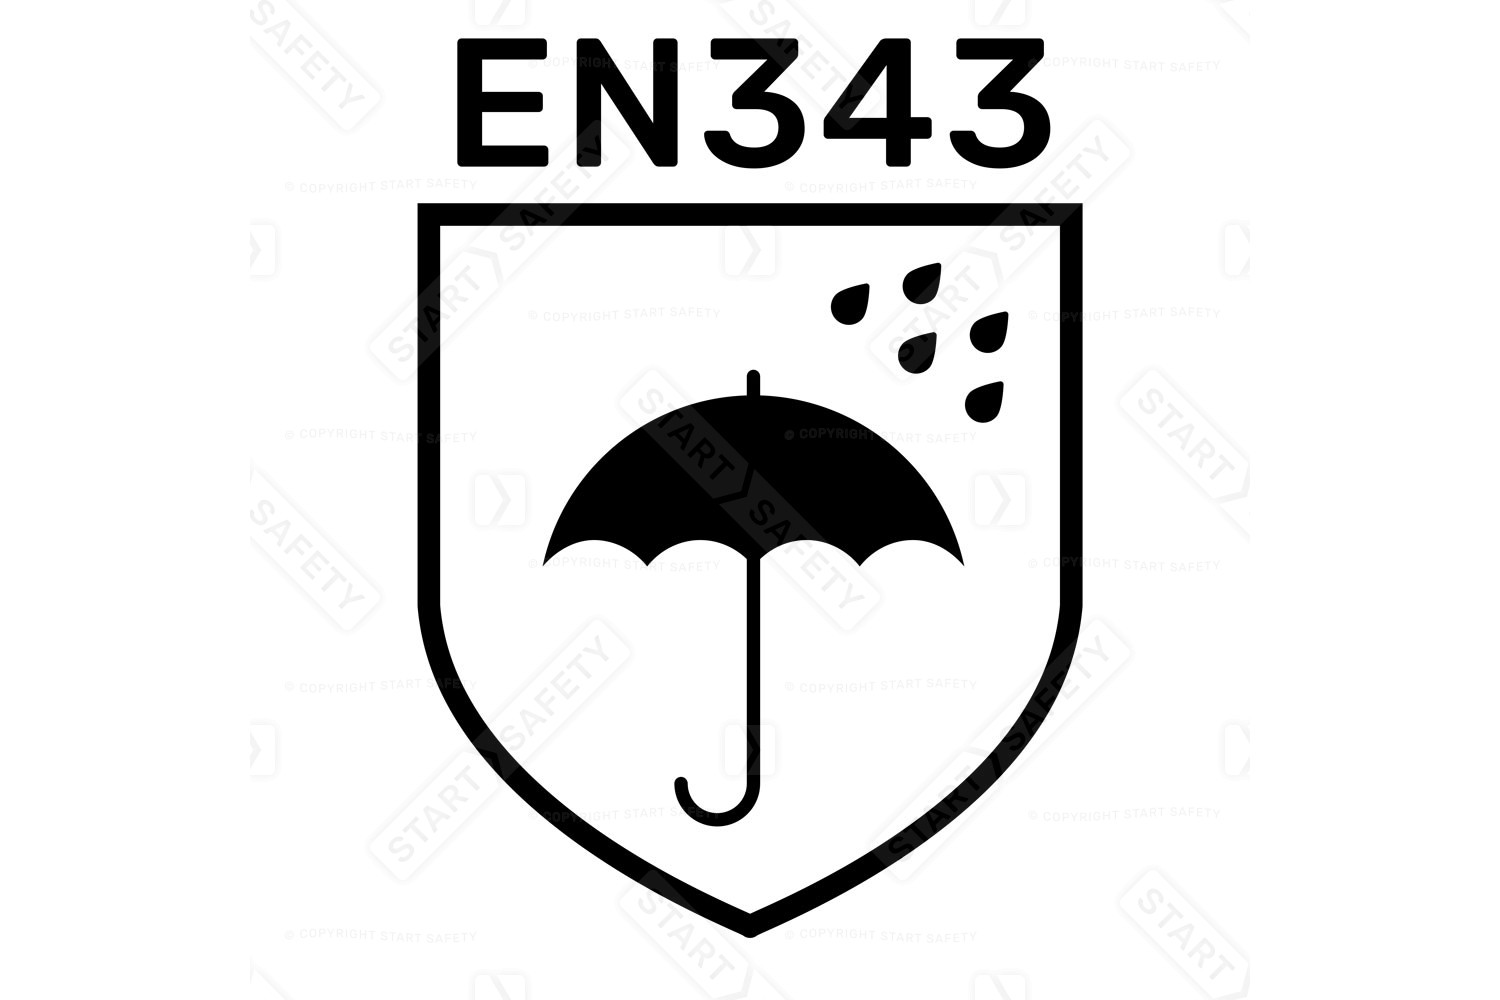 EN343 Standard For Waterproof Clothing